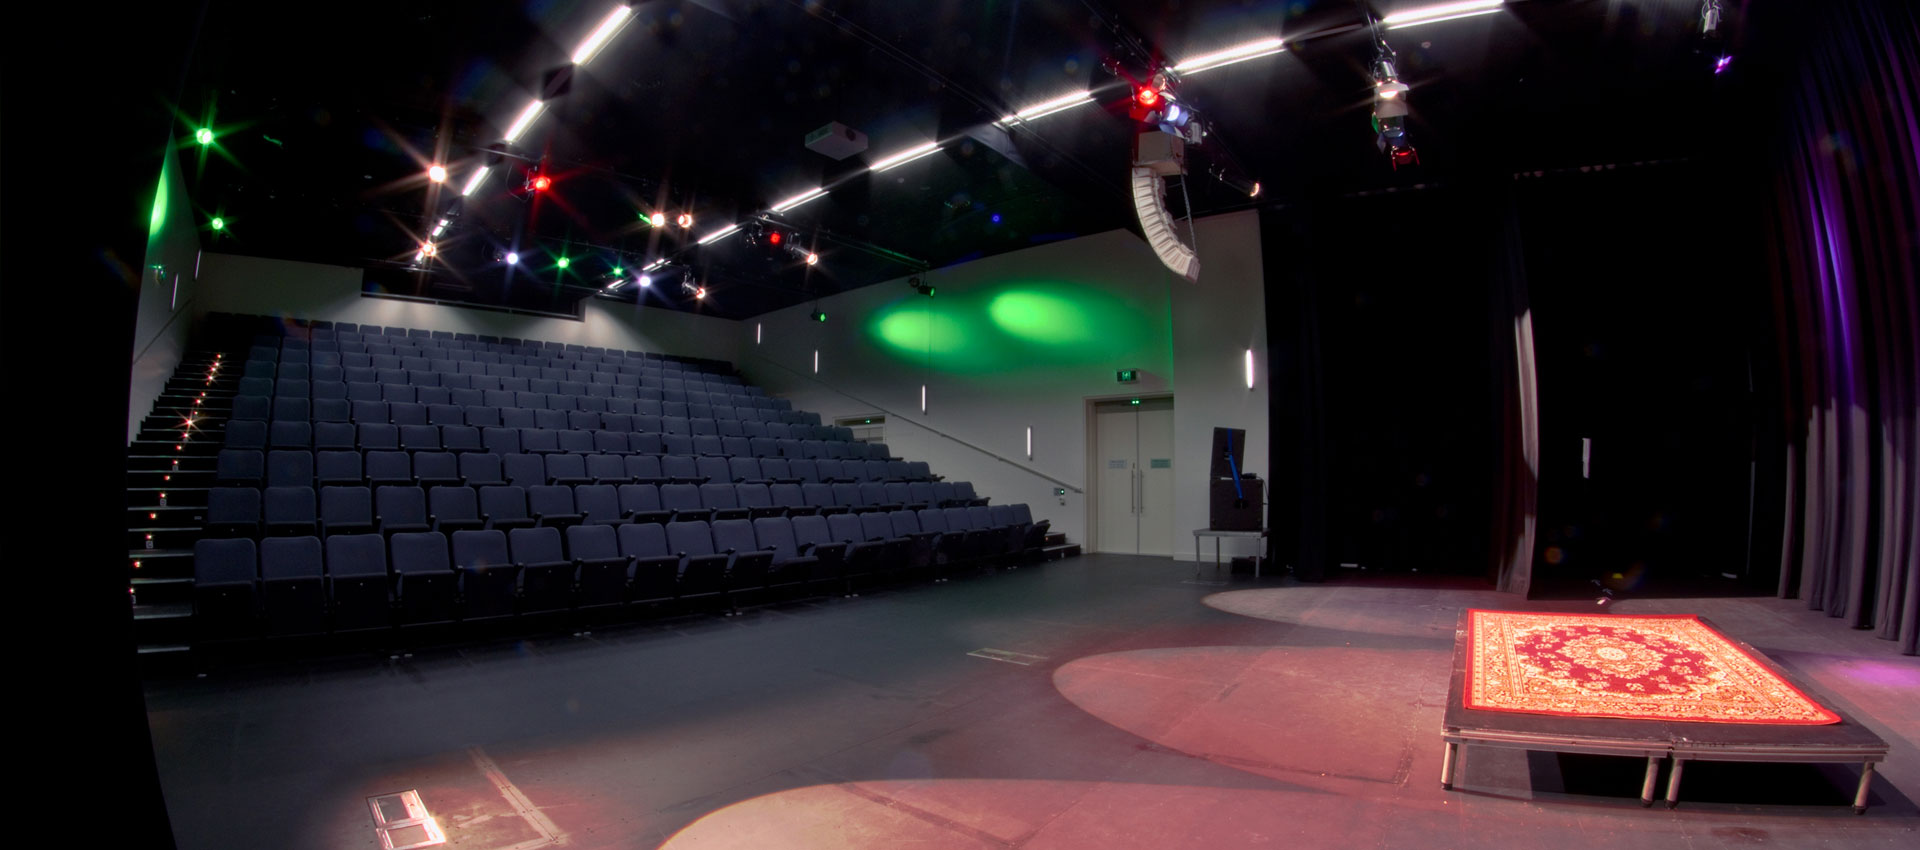 QMC Venue Hire Brisbane - Auditorium Seating